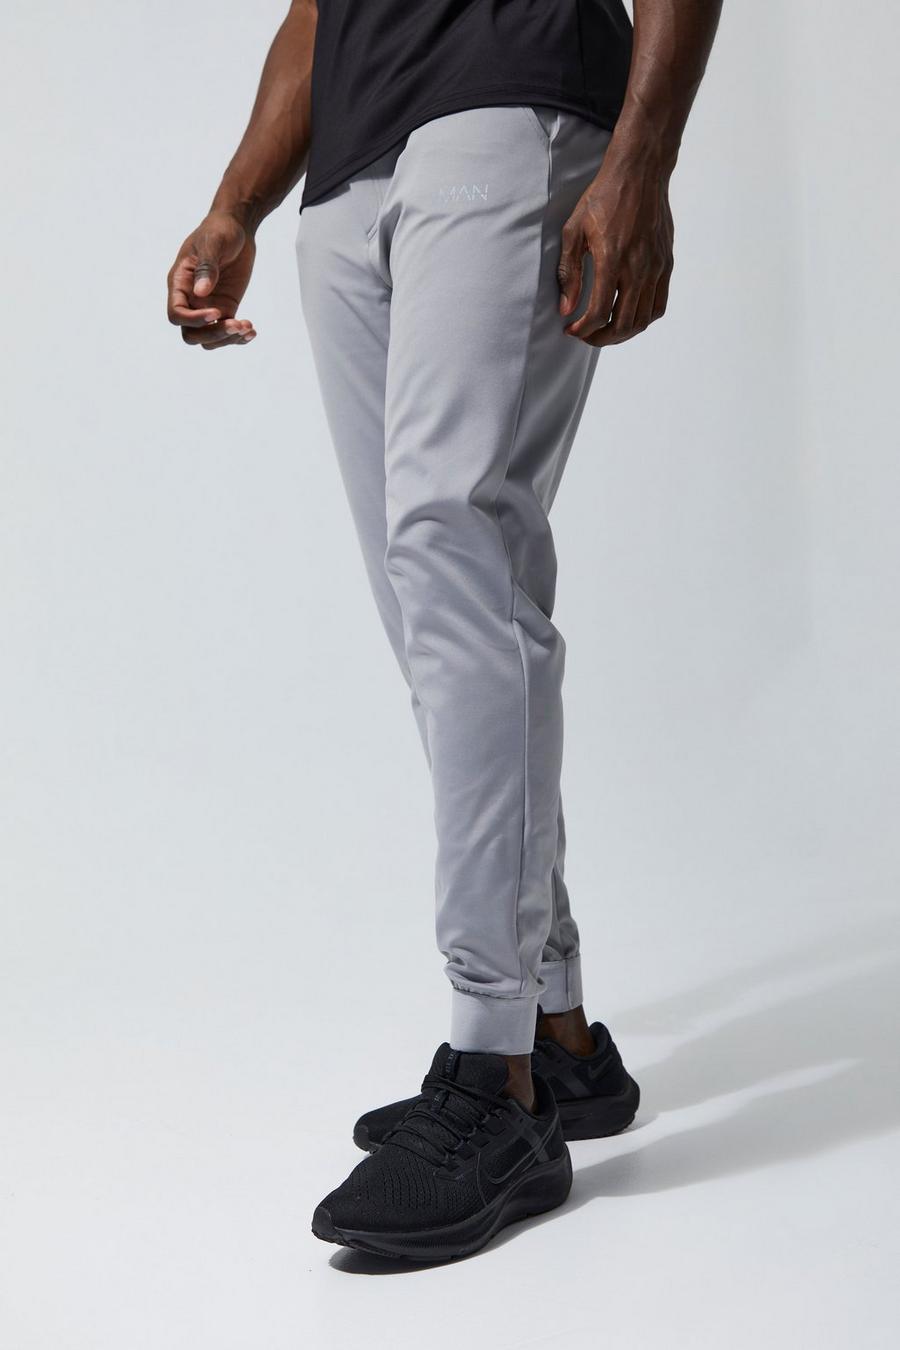 Pantalón deportivo MAN Active para el gimnasio con cintura fija, Grey gris